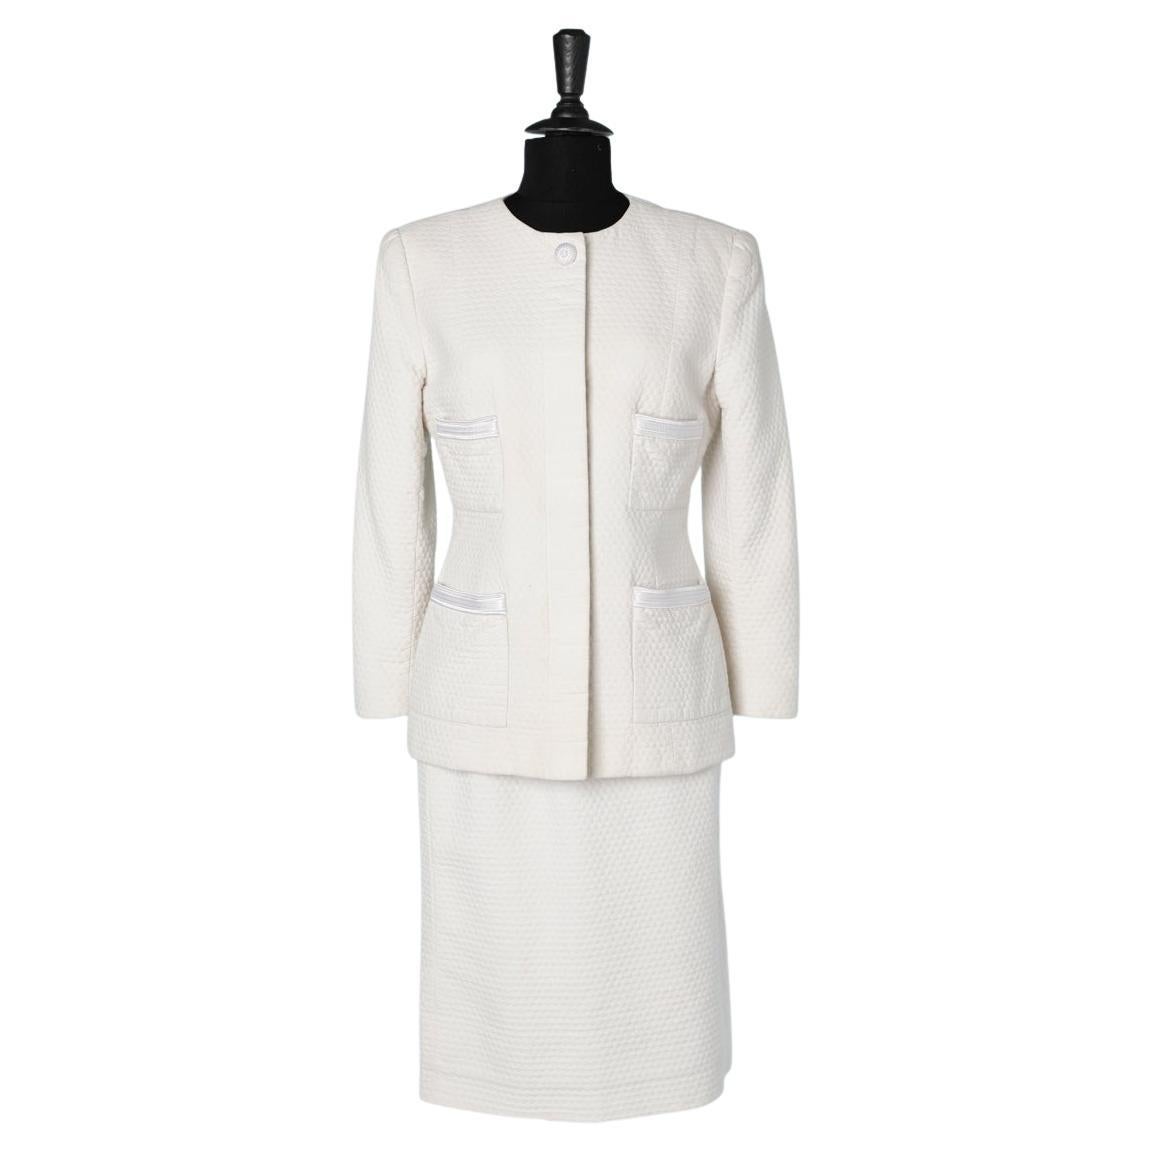 White cotton piqué skirt-suit Oscar de la Renta Pink Label 